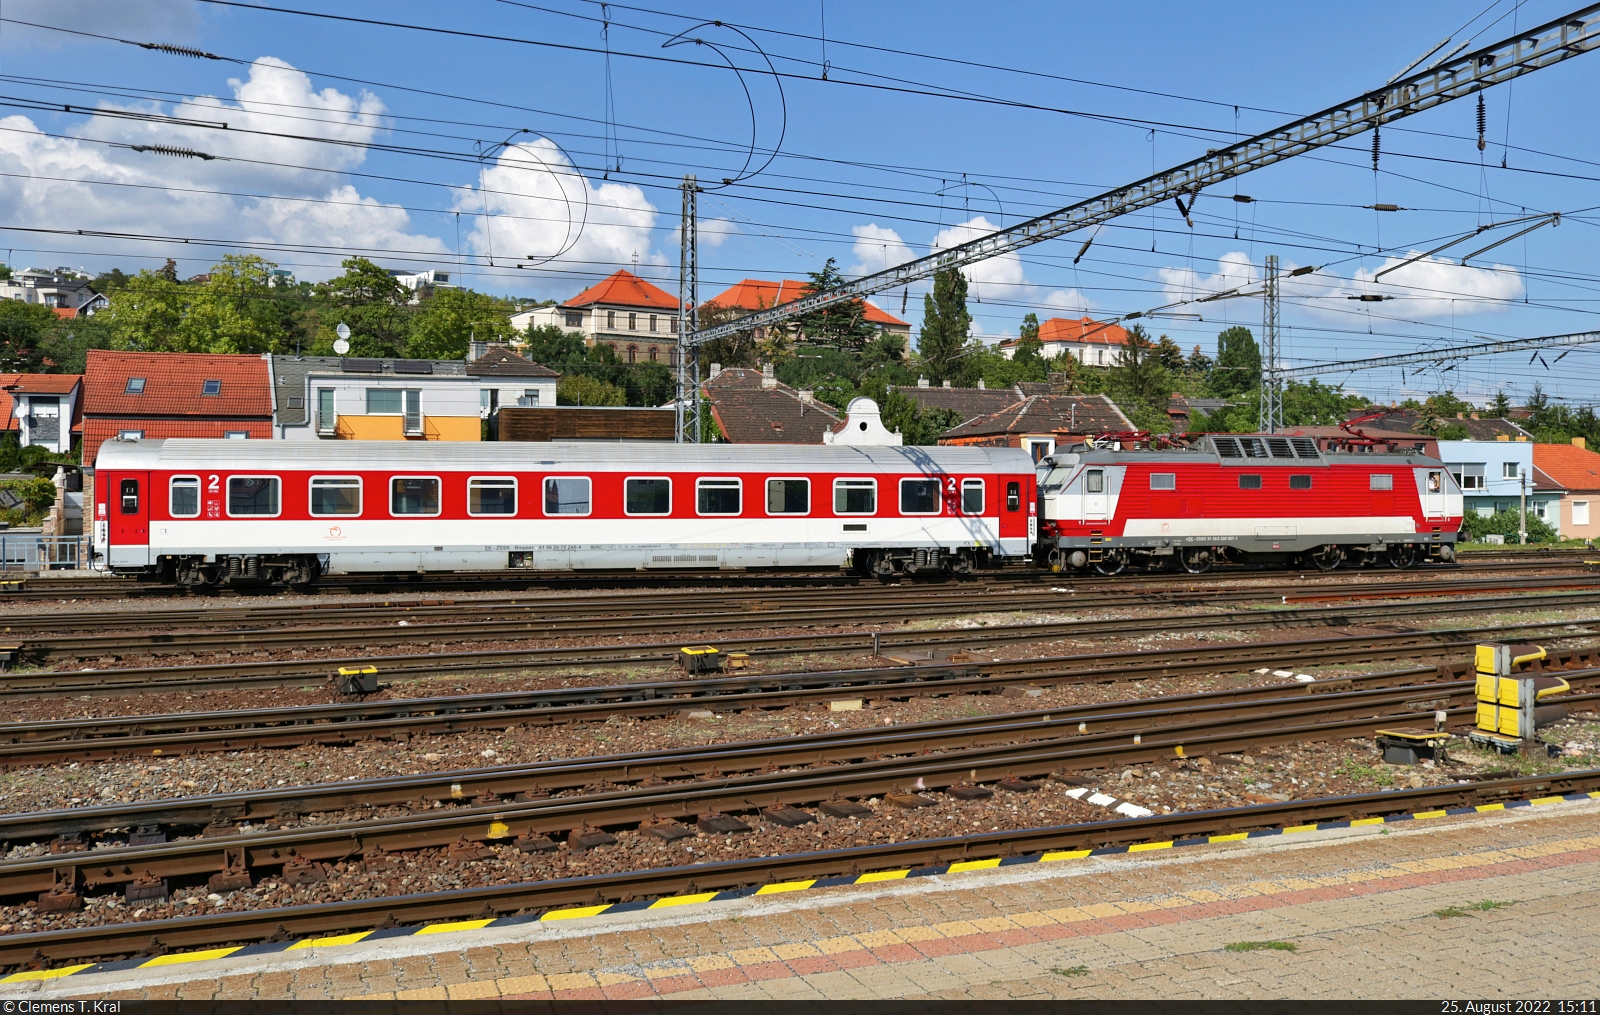 350 007-1 schiebt einen IC-Wagen der 2. Klasse mit der Bezeichnung  Bmpeer  (61 56 20-70 244-4 SK-ZSSK) an einen Bahnsteig in Bratislava hl.st. (SK).

🧰 ZSSK
🕓 25.8.2022 | 15:11 Uhr